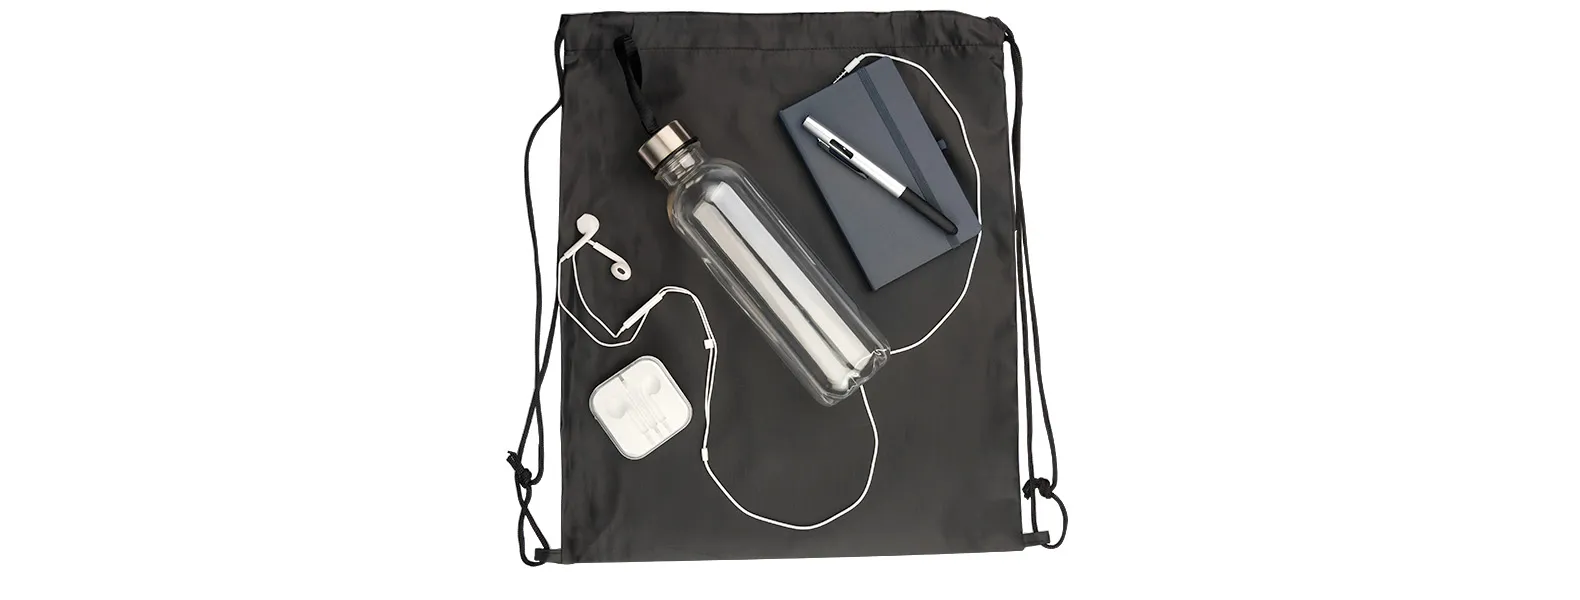 Kit boas vindas. Conta com mochila sacola preta em nylon 210D, caderno para anotações cinza com capa dura, garrafa transparente em PET, fone de ouvido e caneta esferográfica em ABS prata.